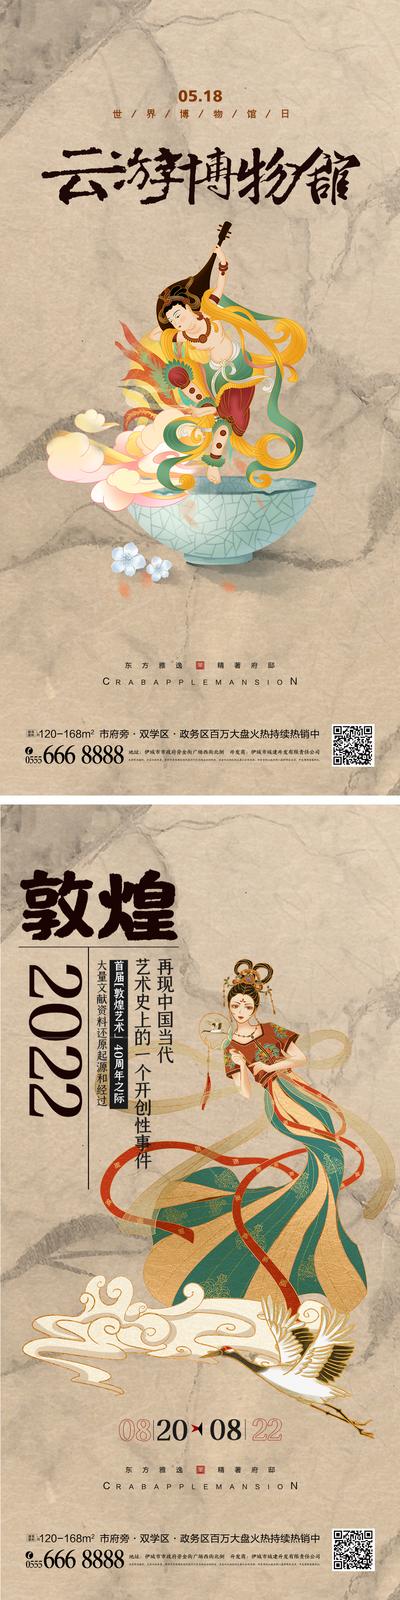 【南门网】海报 创意 敦煌 展览 传统艺术 中国风 博物馆